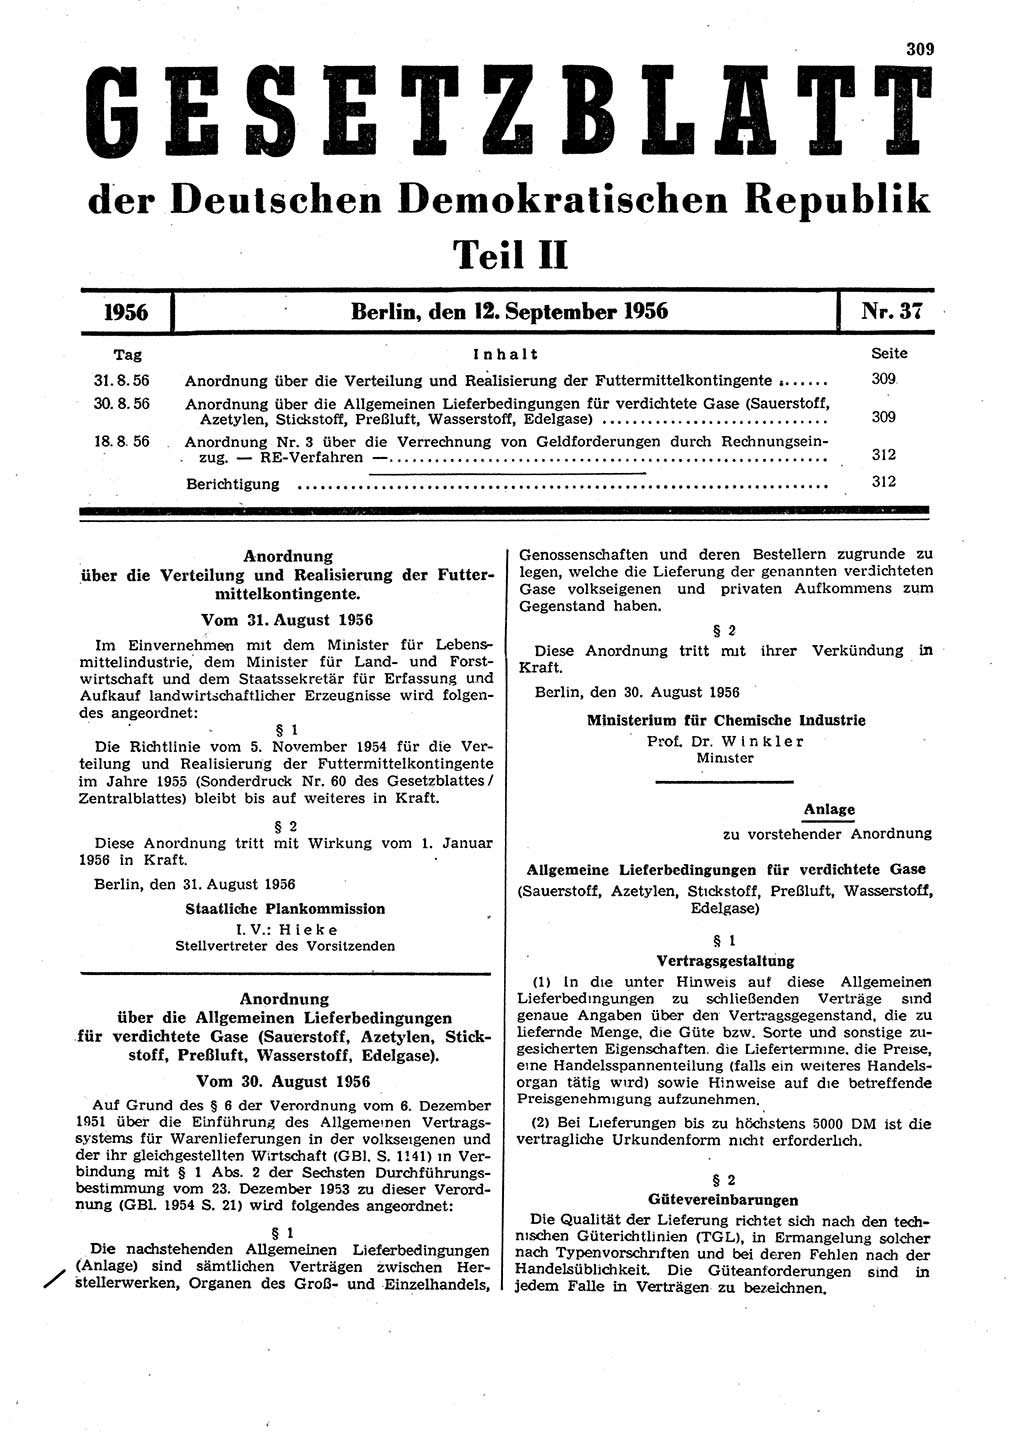 Gesetzblatt (GBl.) der Deutschen Demokratischen Republik (DDR) Teil ⅠⅠ 1956, Seite 309 (GBl. DDR ⅠⅠ 1956, S. 309)